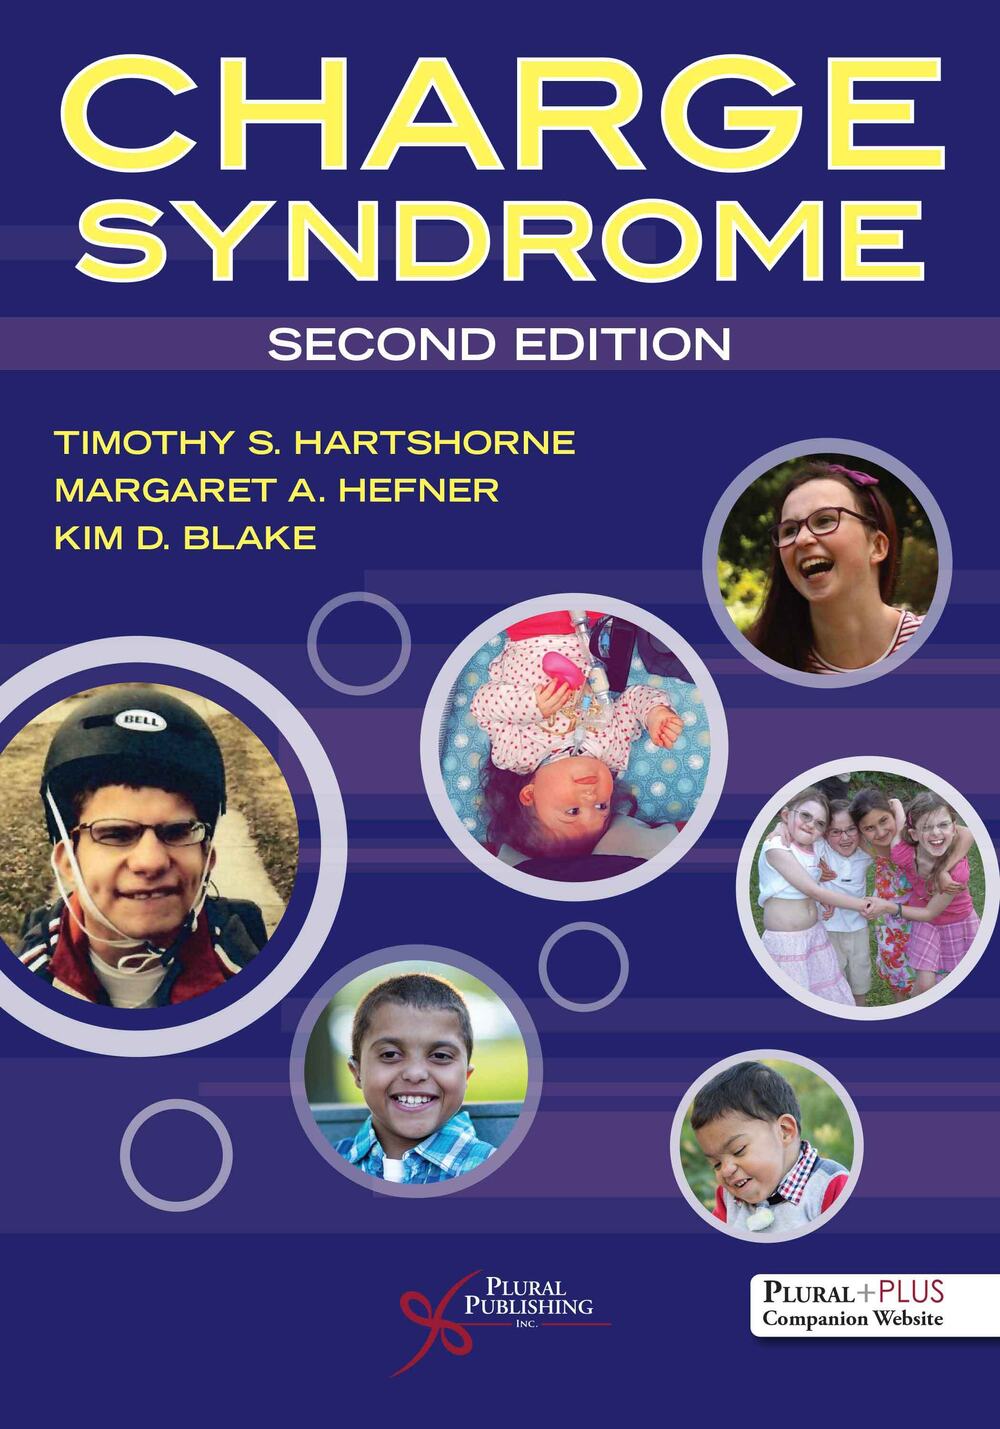 Forside på bok om CHARGE-syndrom, seks runde bilder av ulike barn med CHARGE i aktivitet.